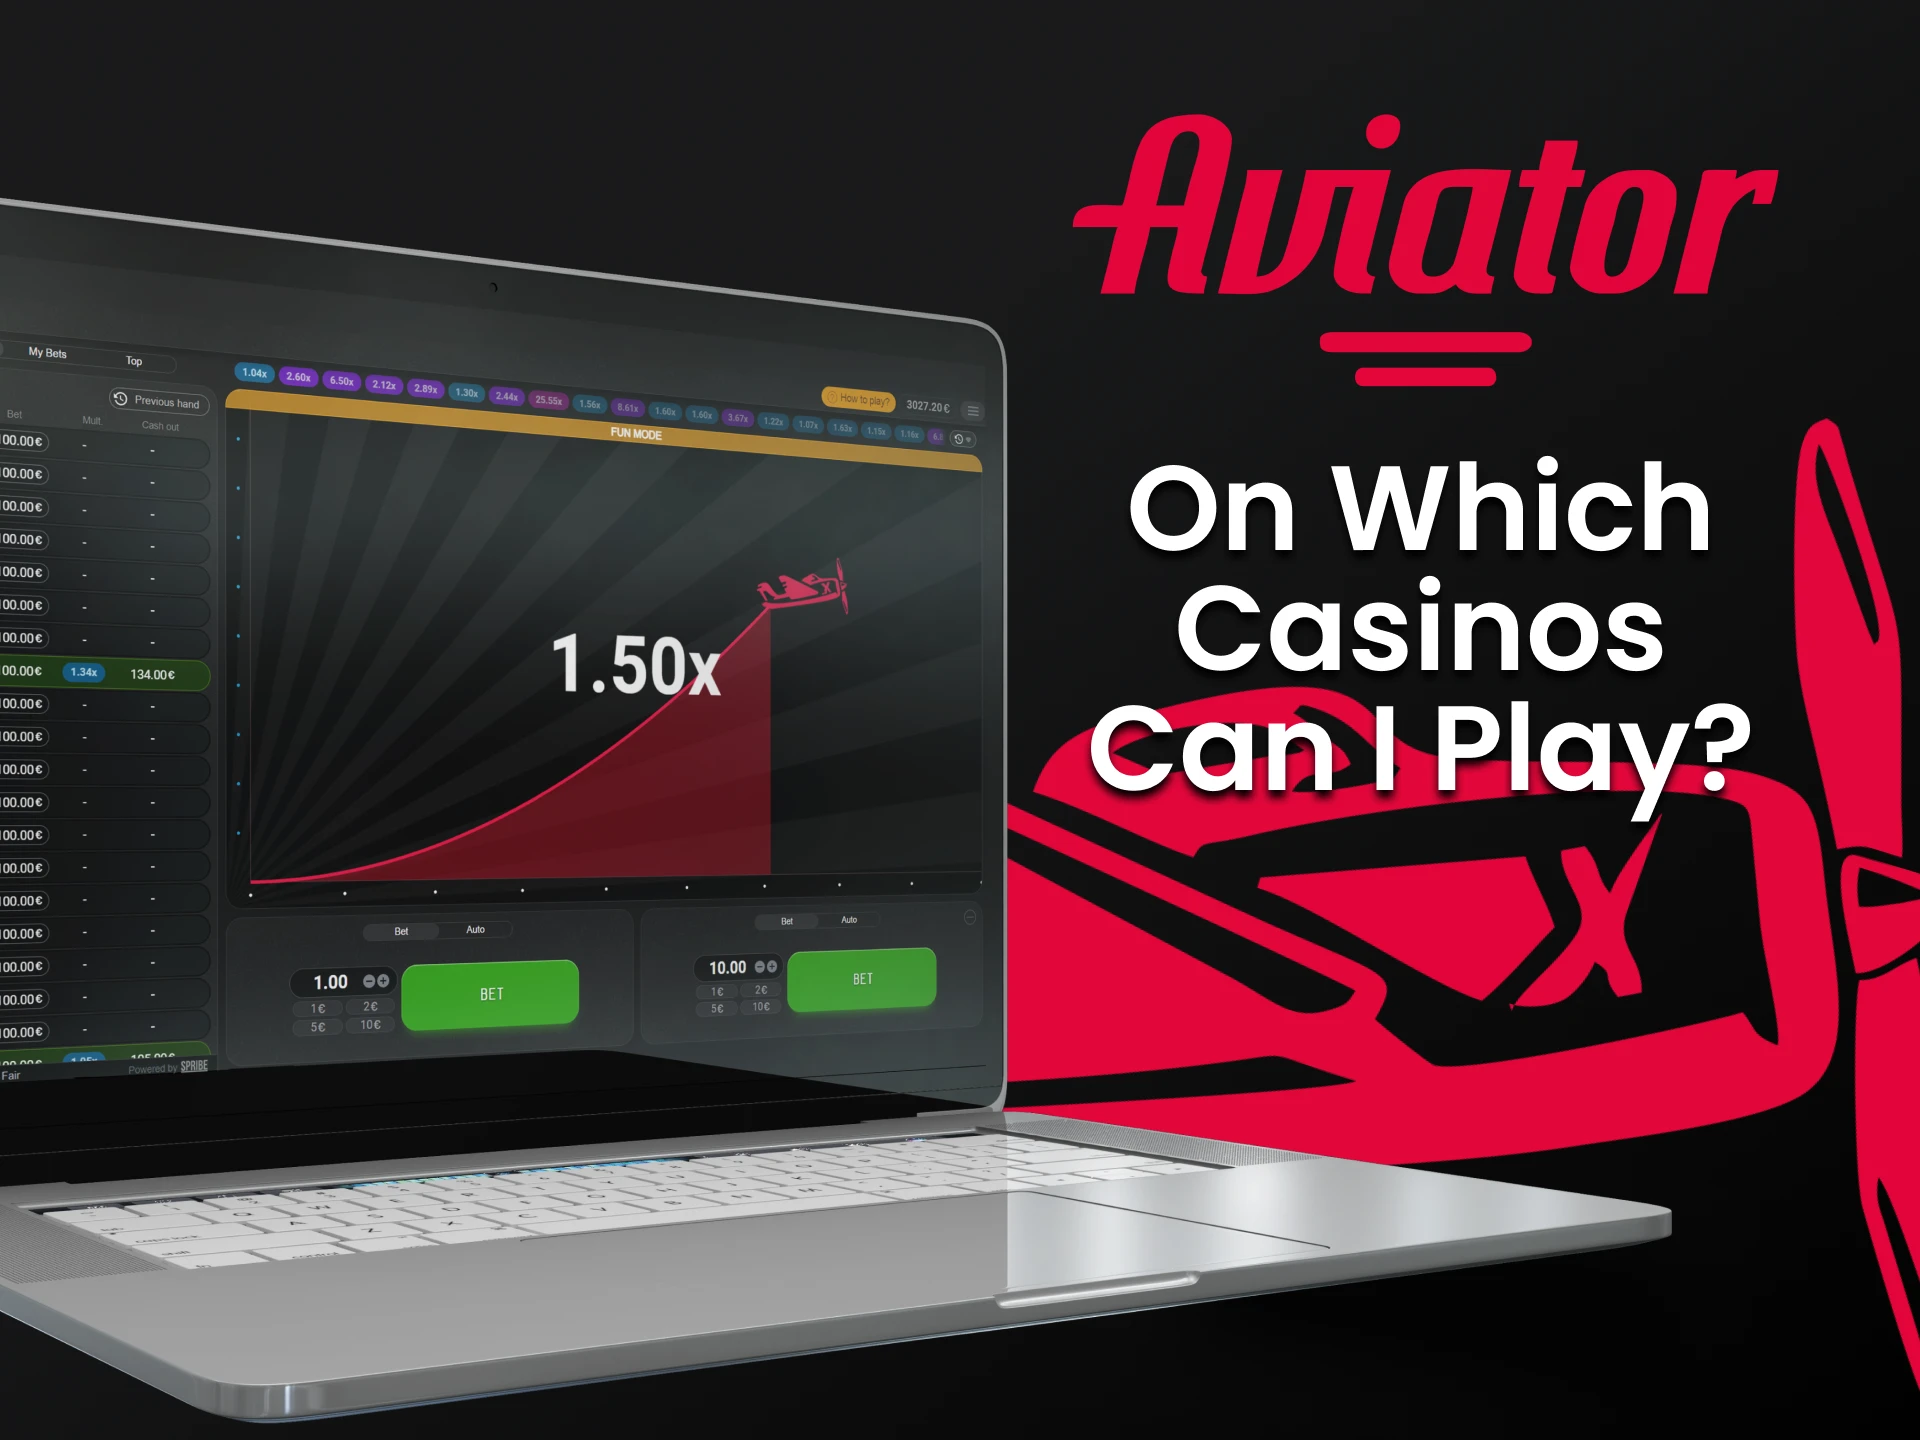 Escolha um cassino conveniente para jogar Aviator.